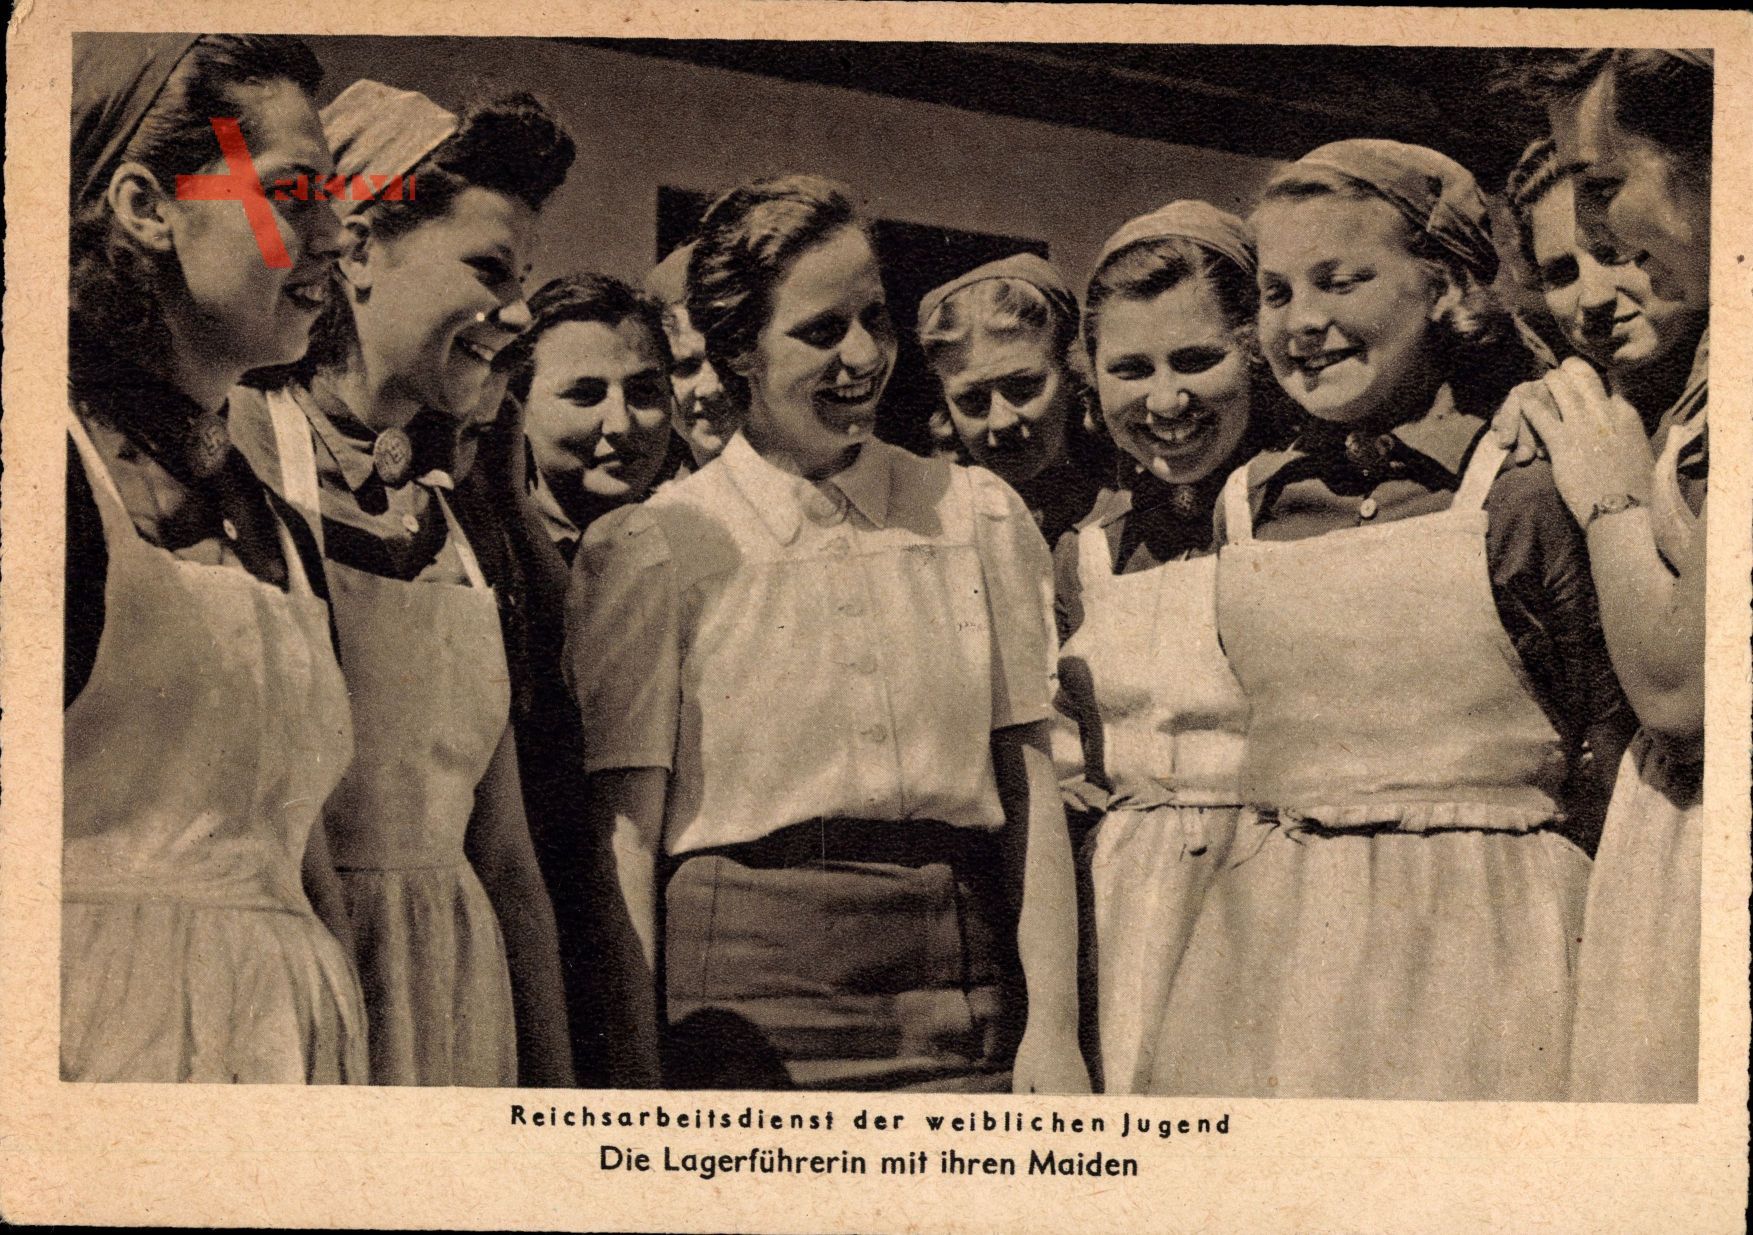 Reichsarbeitsdienst der weiblichen Jugend, Lagerführerin, Maiden